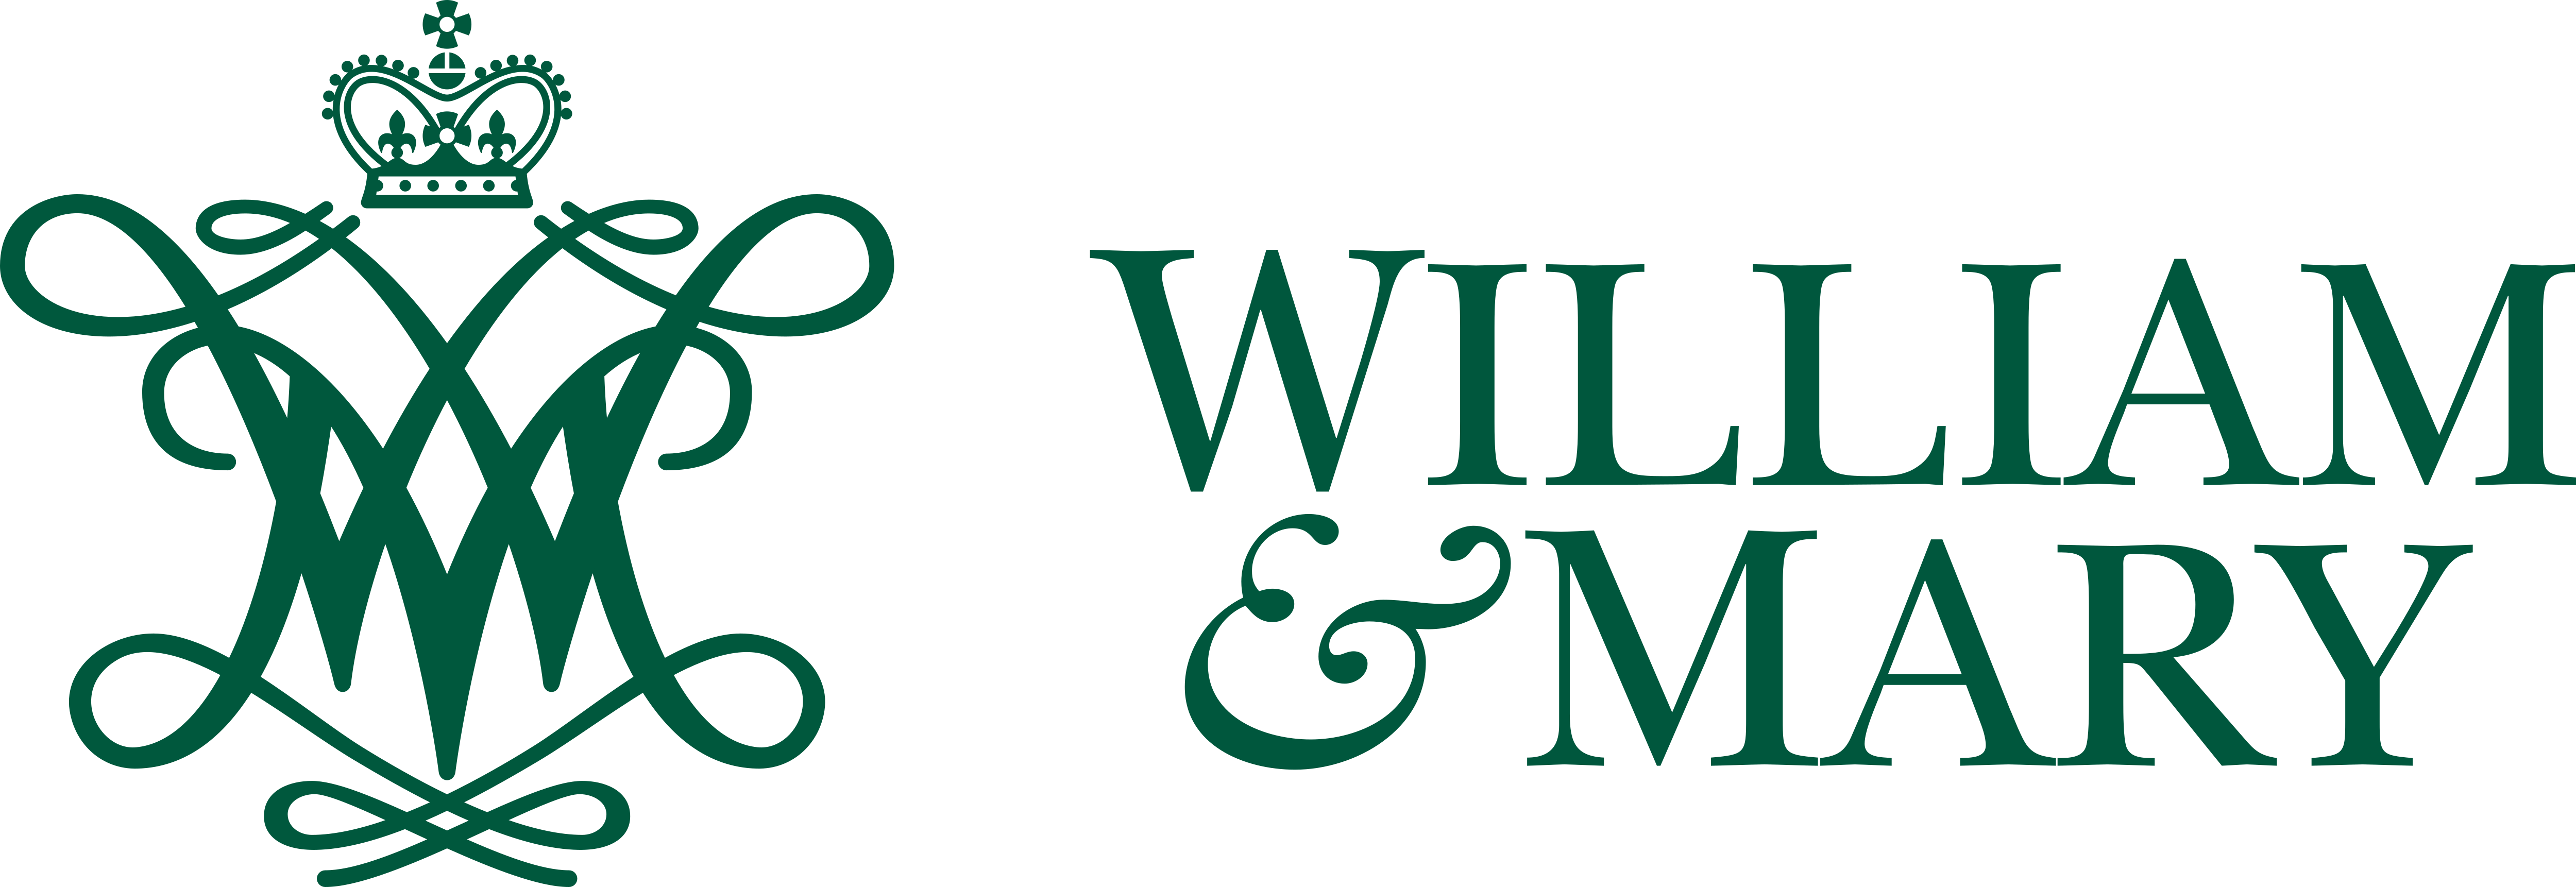 William & Mary